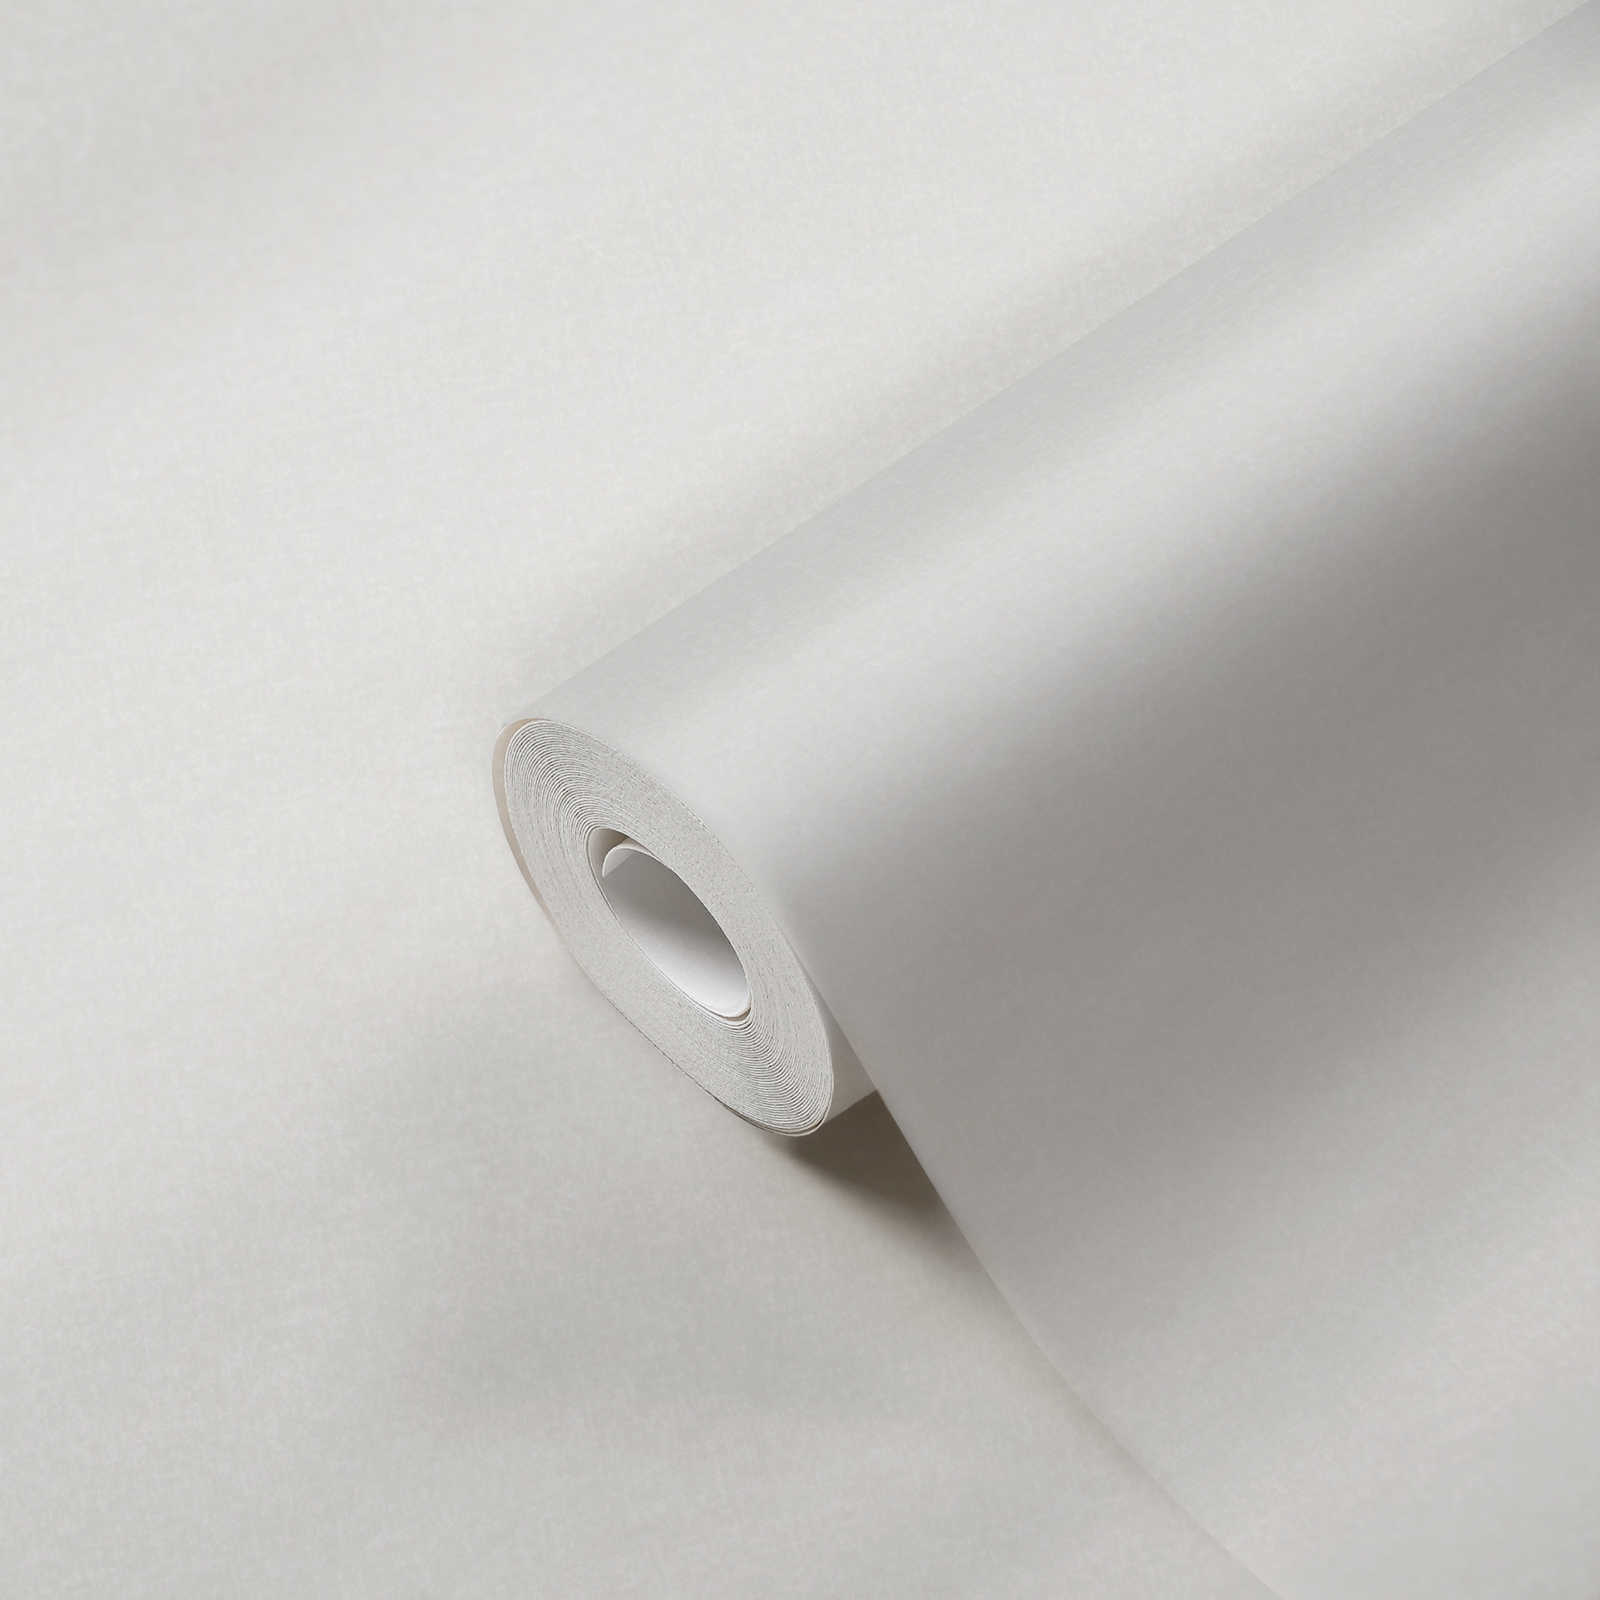             Strukturierte Unitapete schlichte Farben – Weiß
        